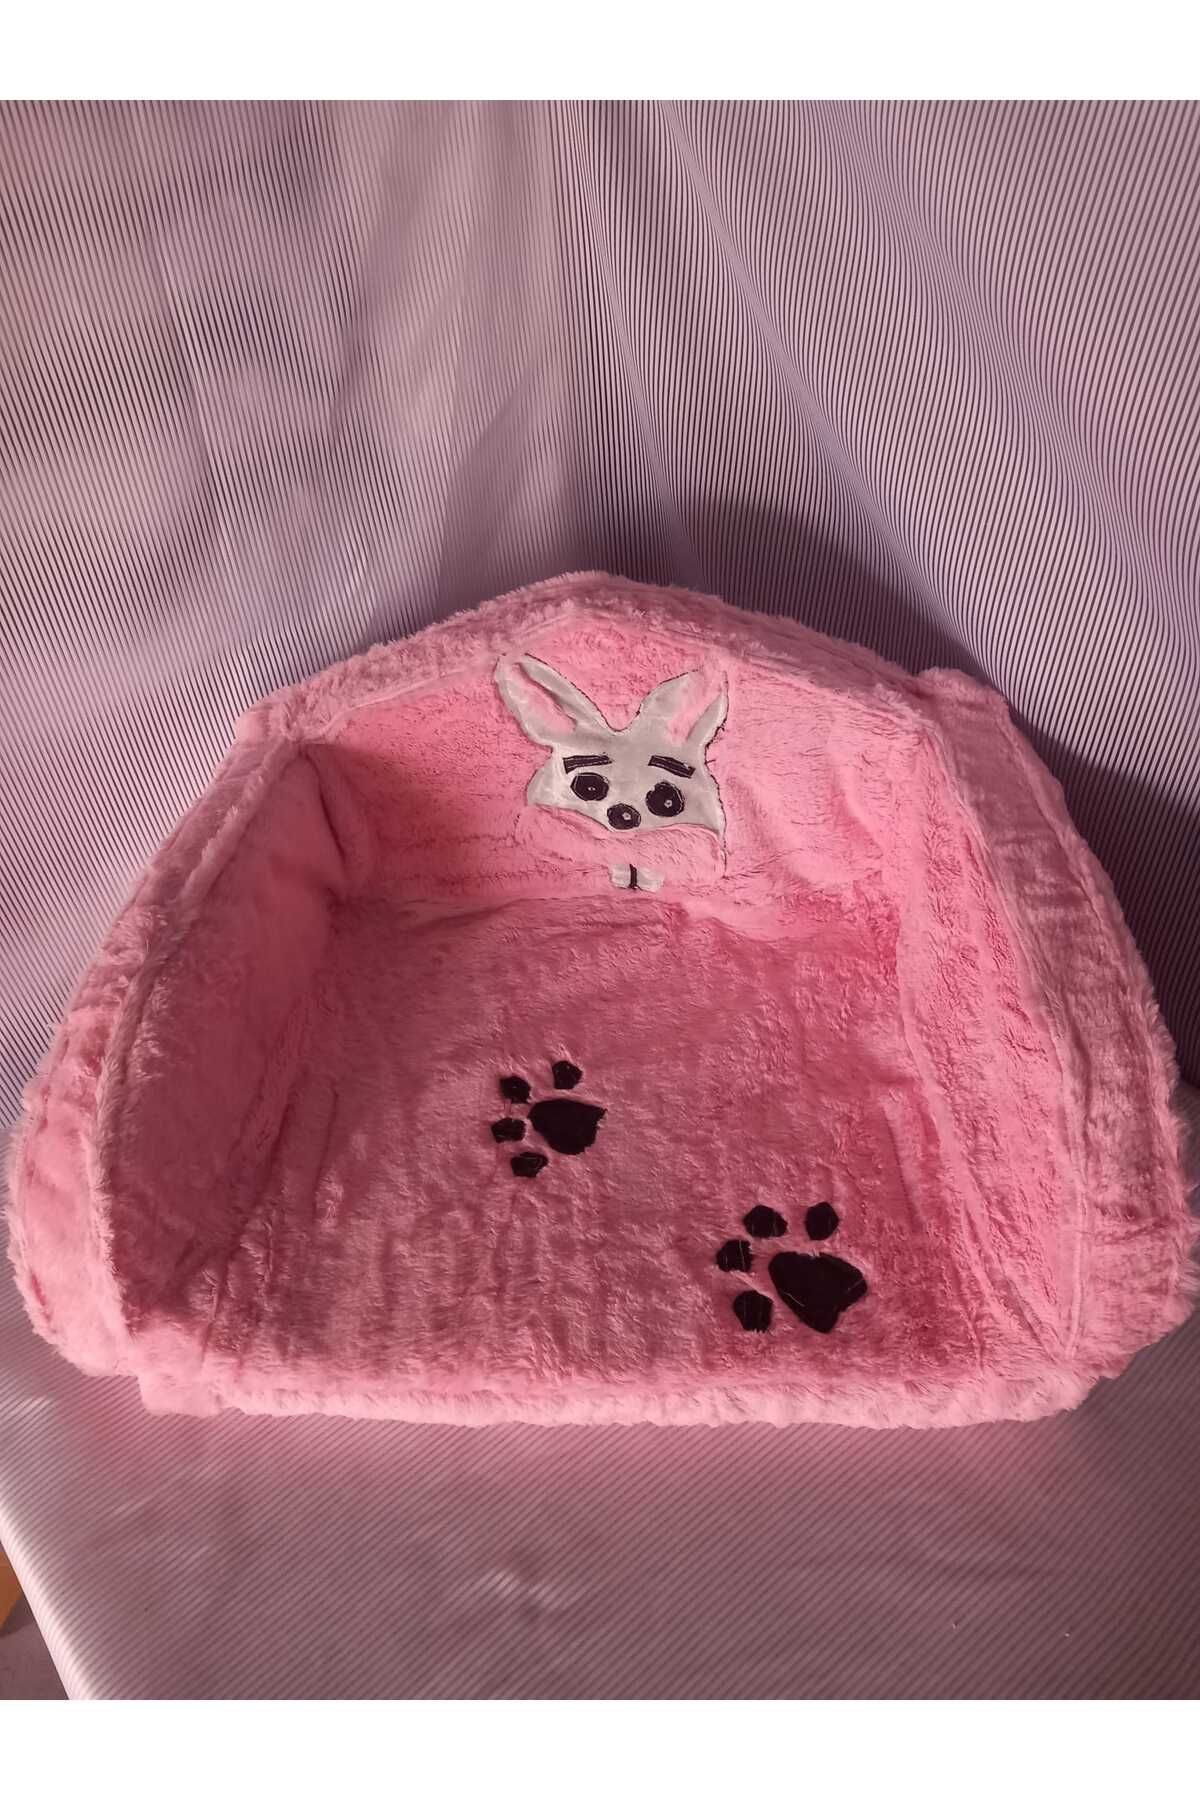 CANSA kedi köpek yatağı